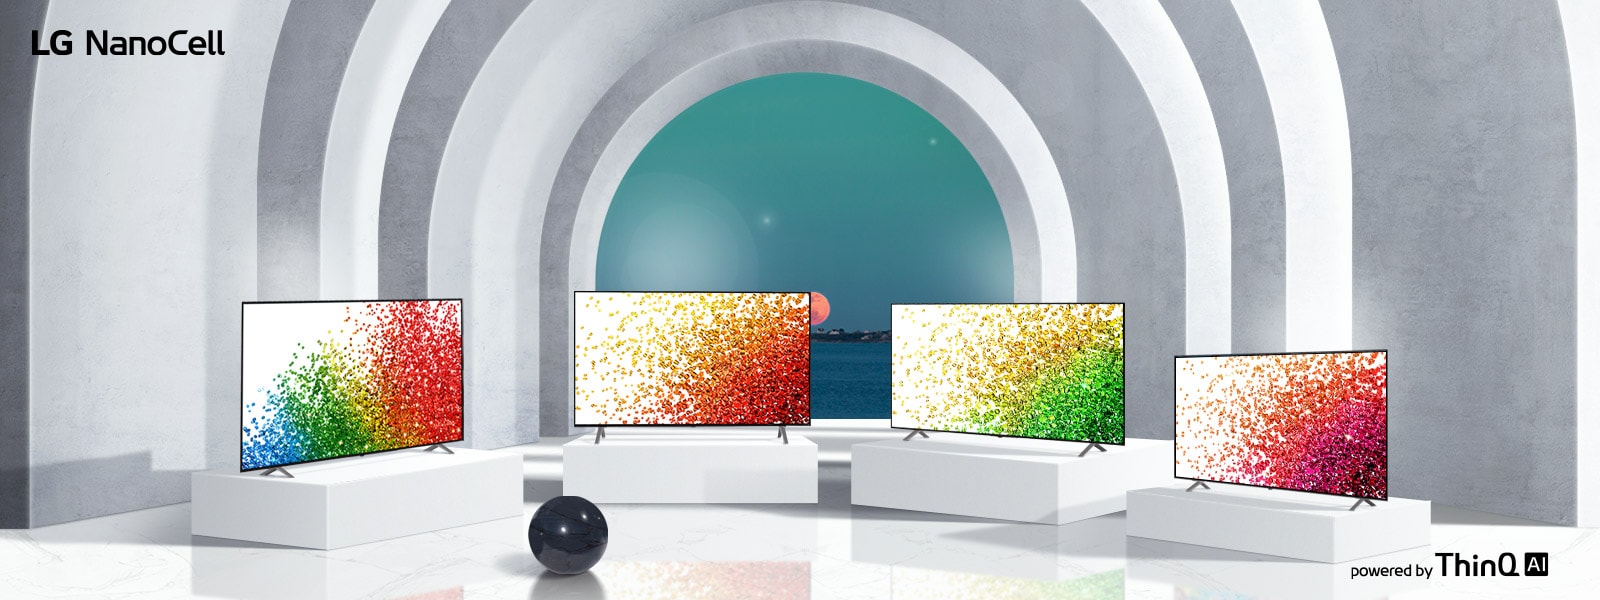 Faites passer votre expérience visuelle au niveau supérieur  grâce à NanoCell TV 1